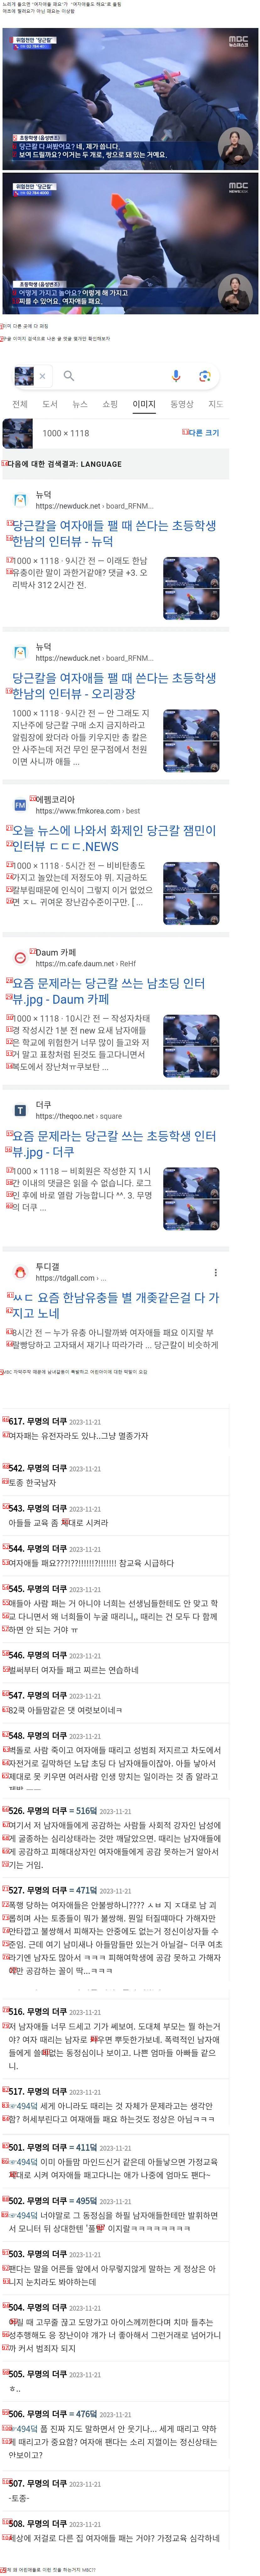 (SOUND)MBC 뉴스 주작 논란 터짐